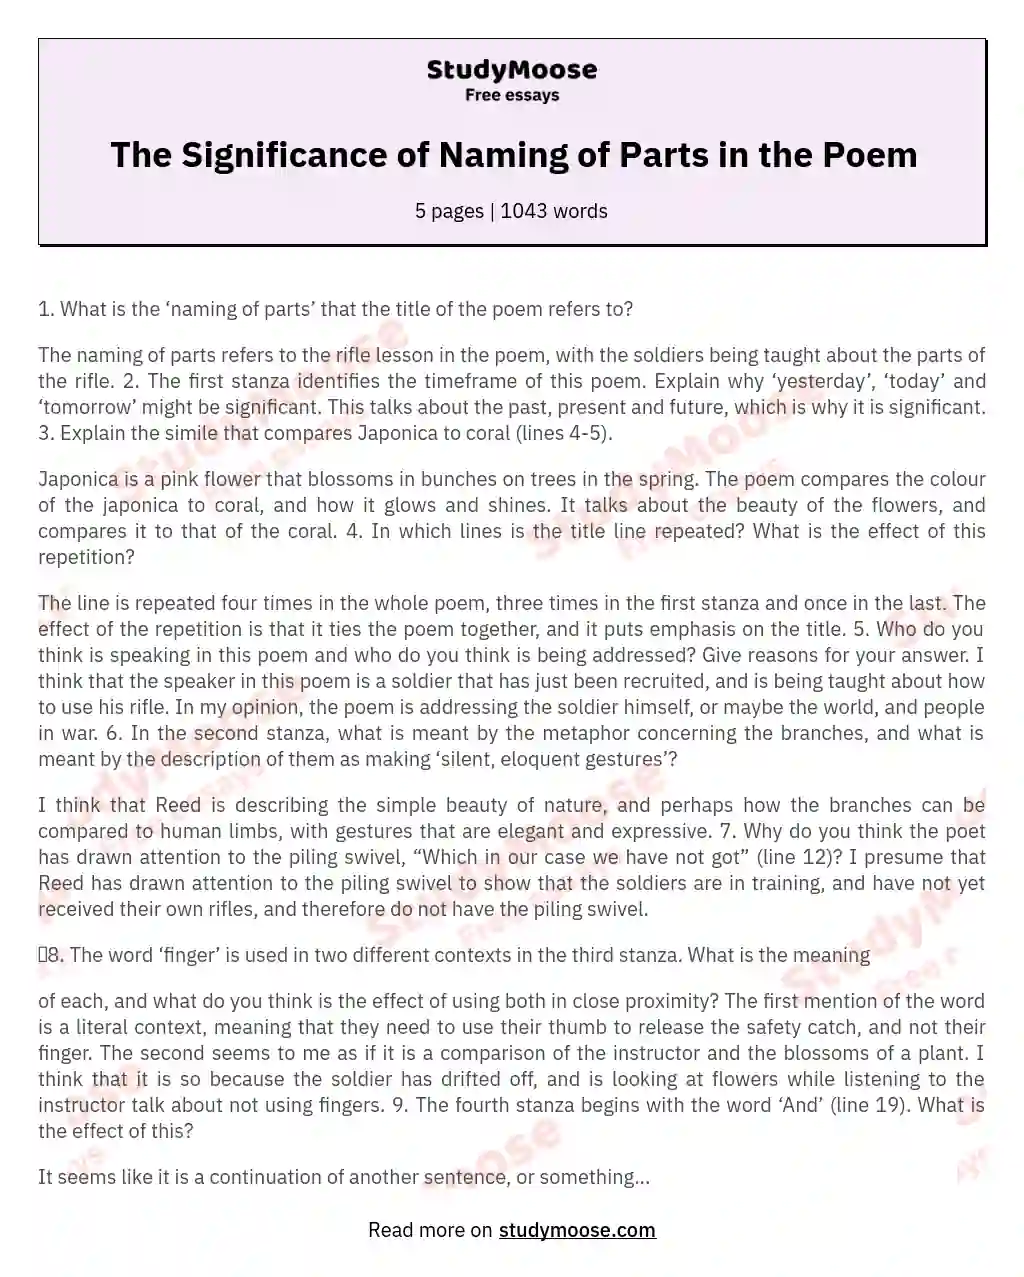 Naming of Parts